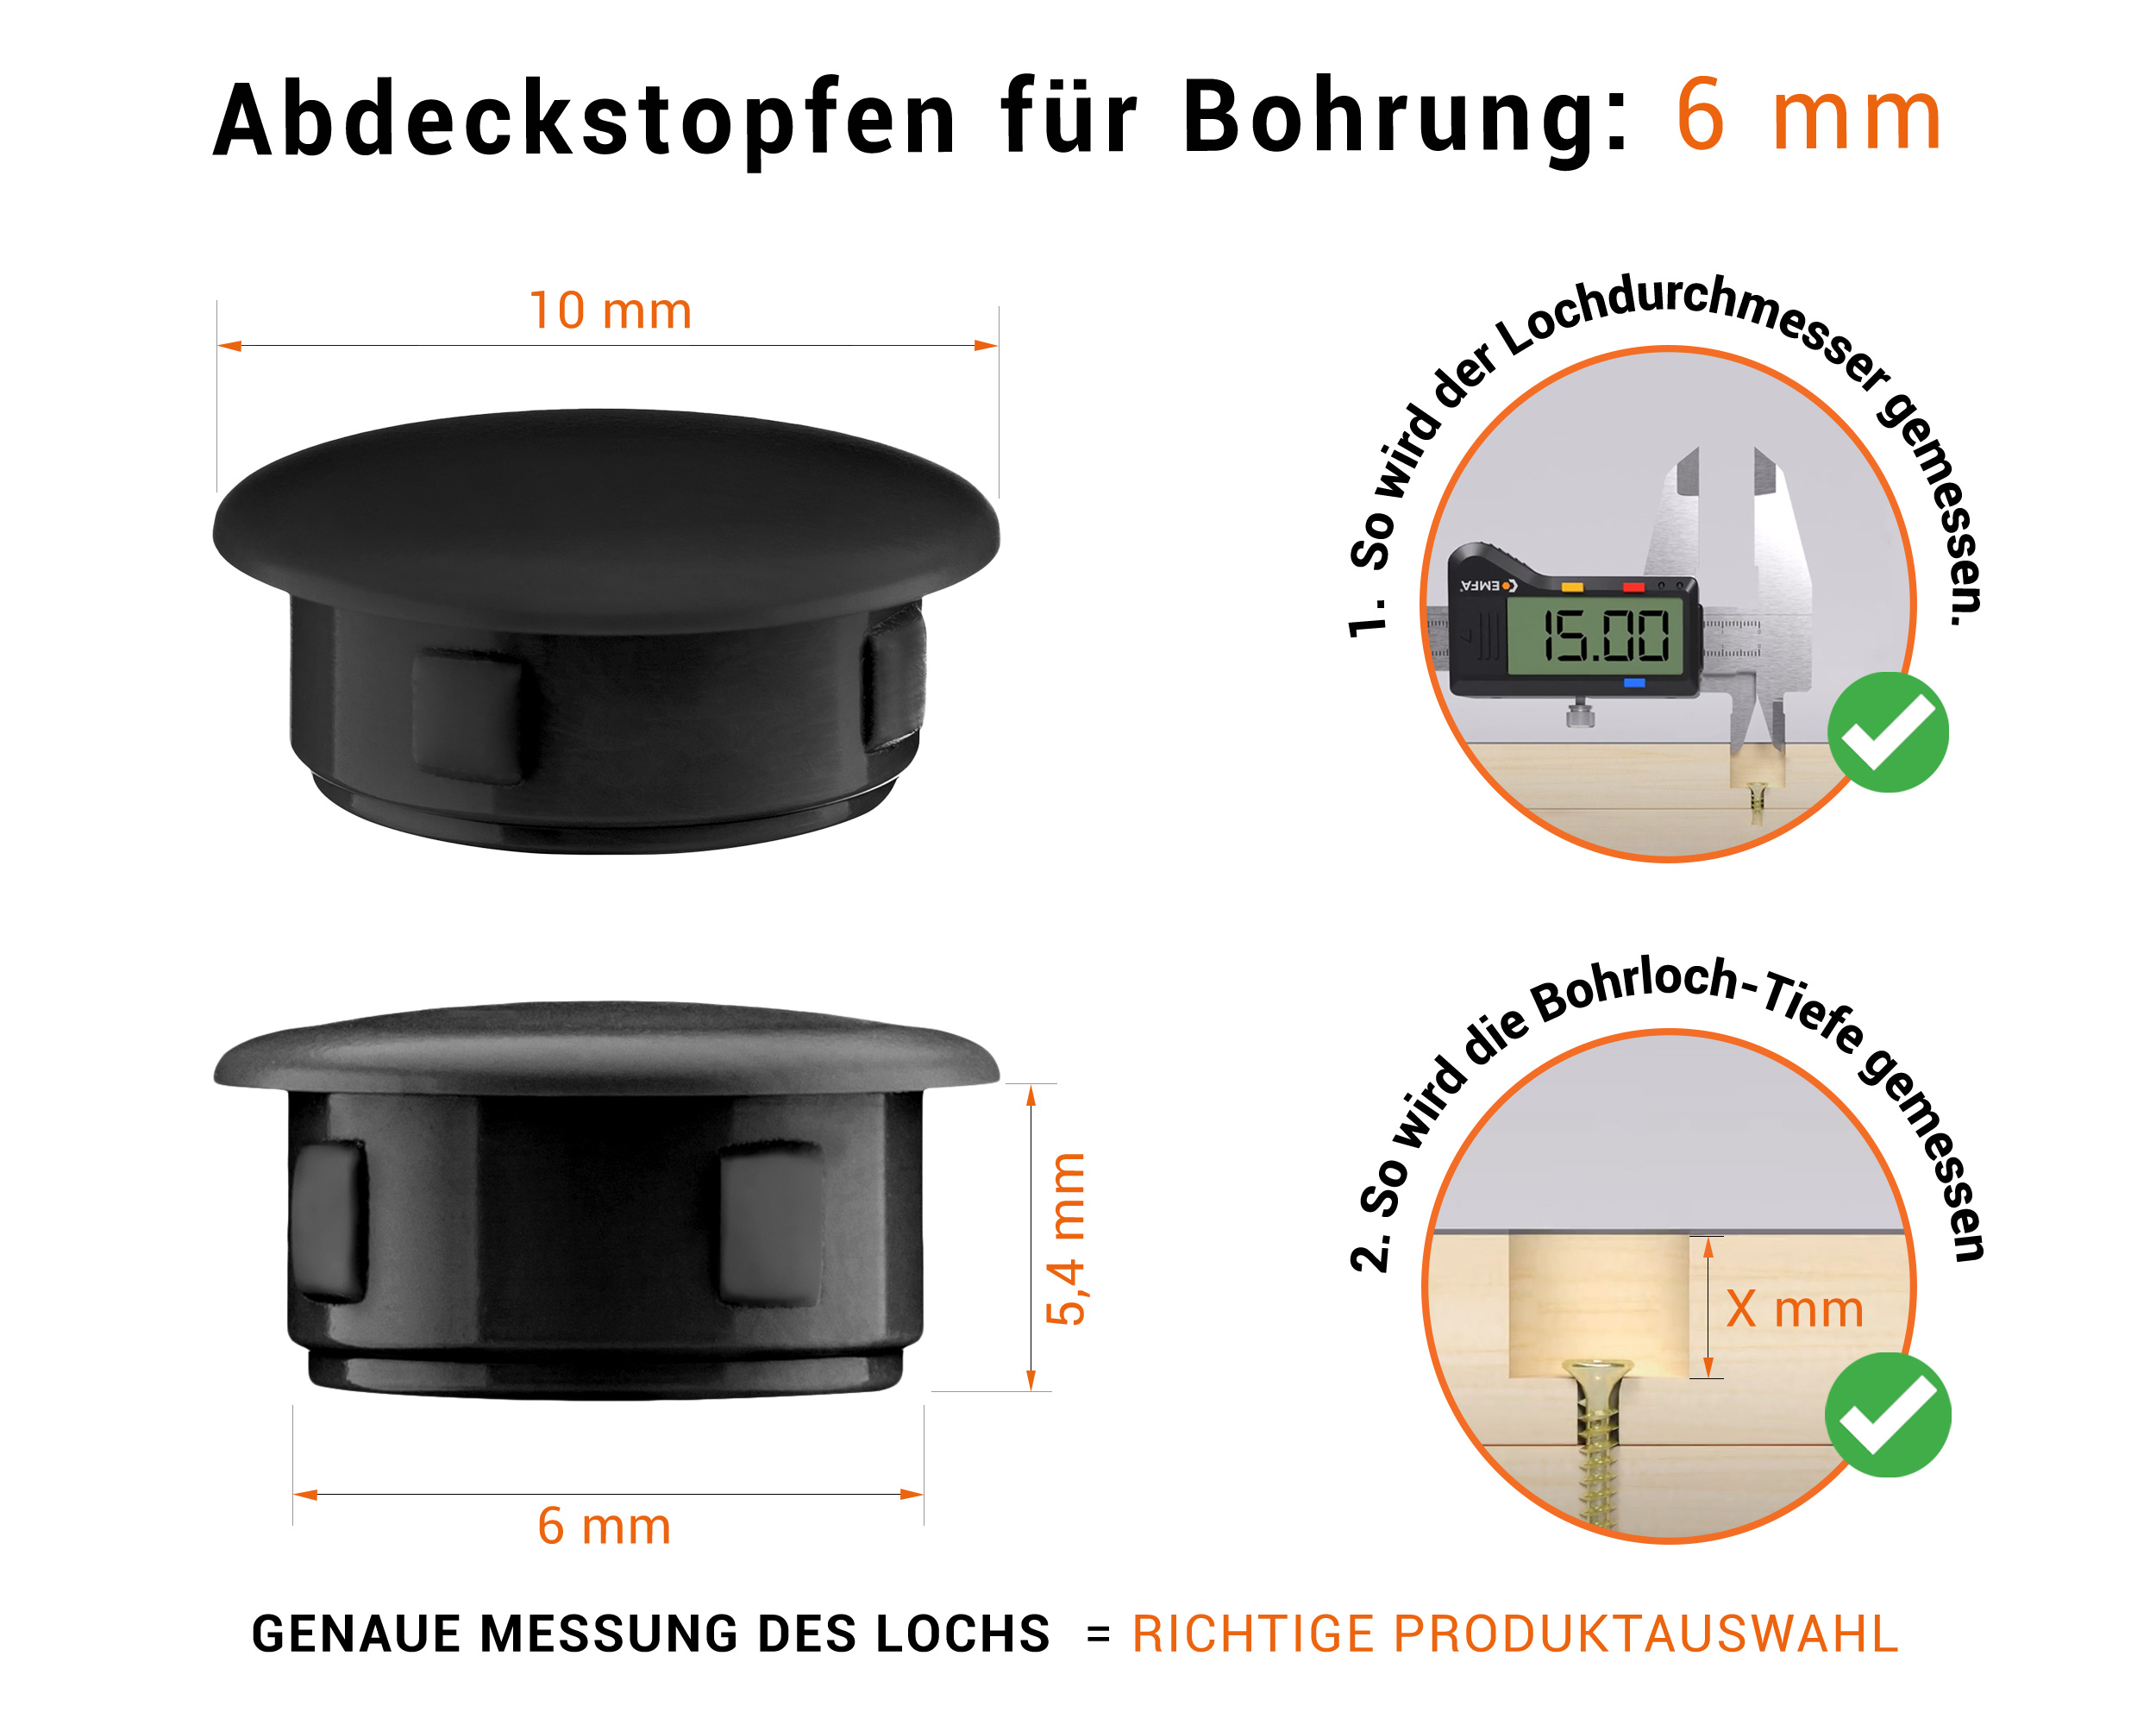 Schwarze Blindstopfen aus Kunststoff für Bohrung 6 mm mm mit technischen Abmessungen und Anleitung für korrekte Messung